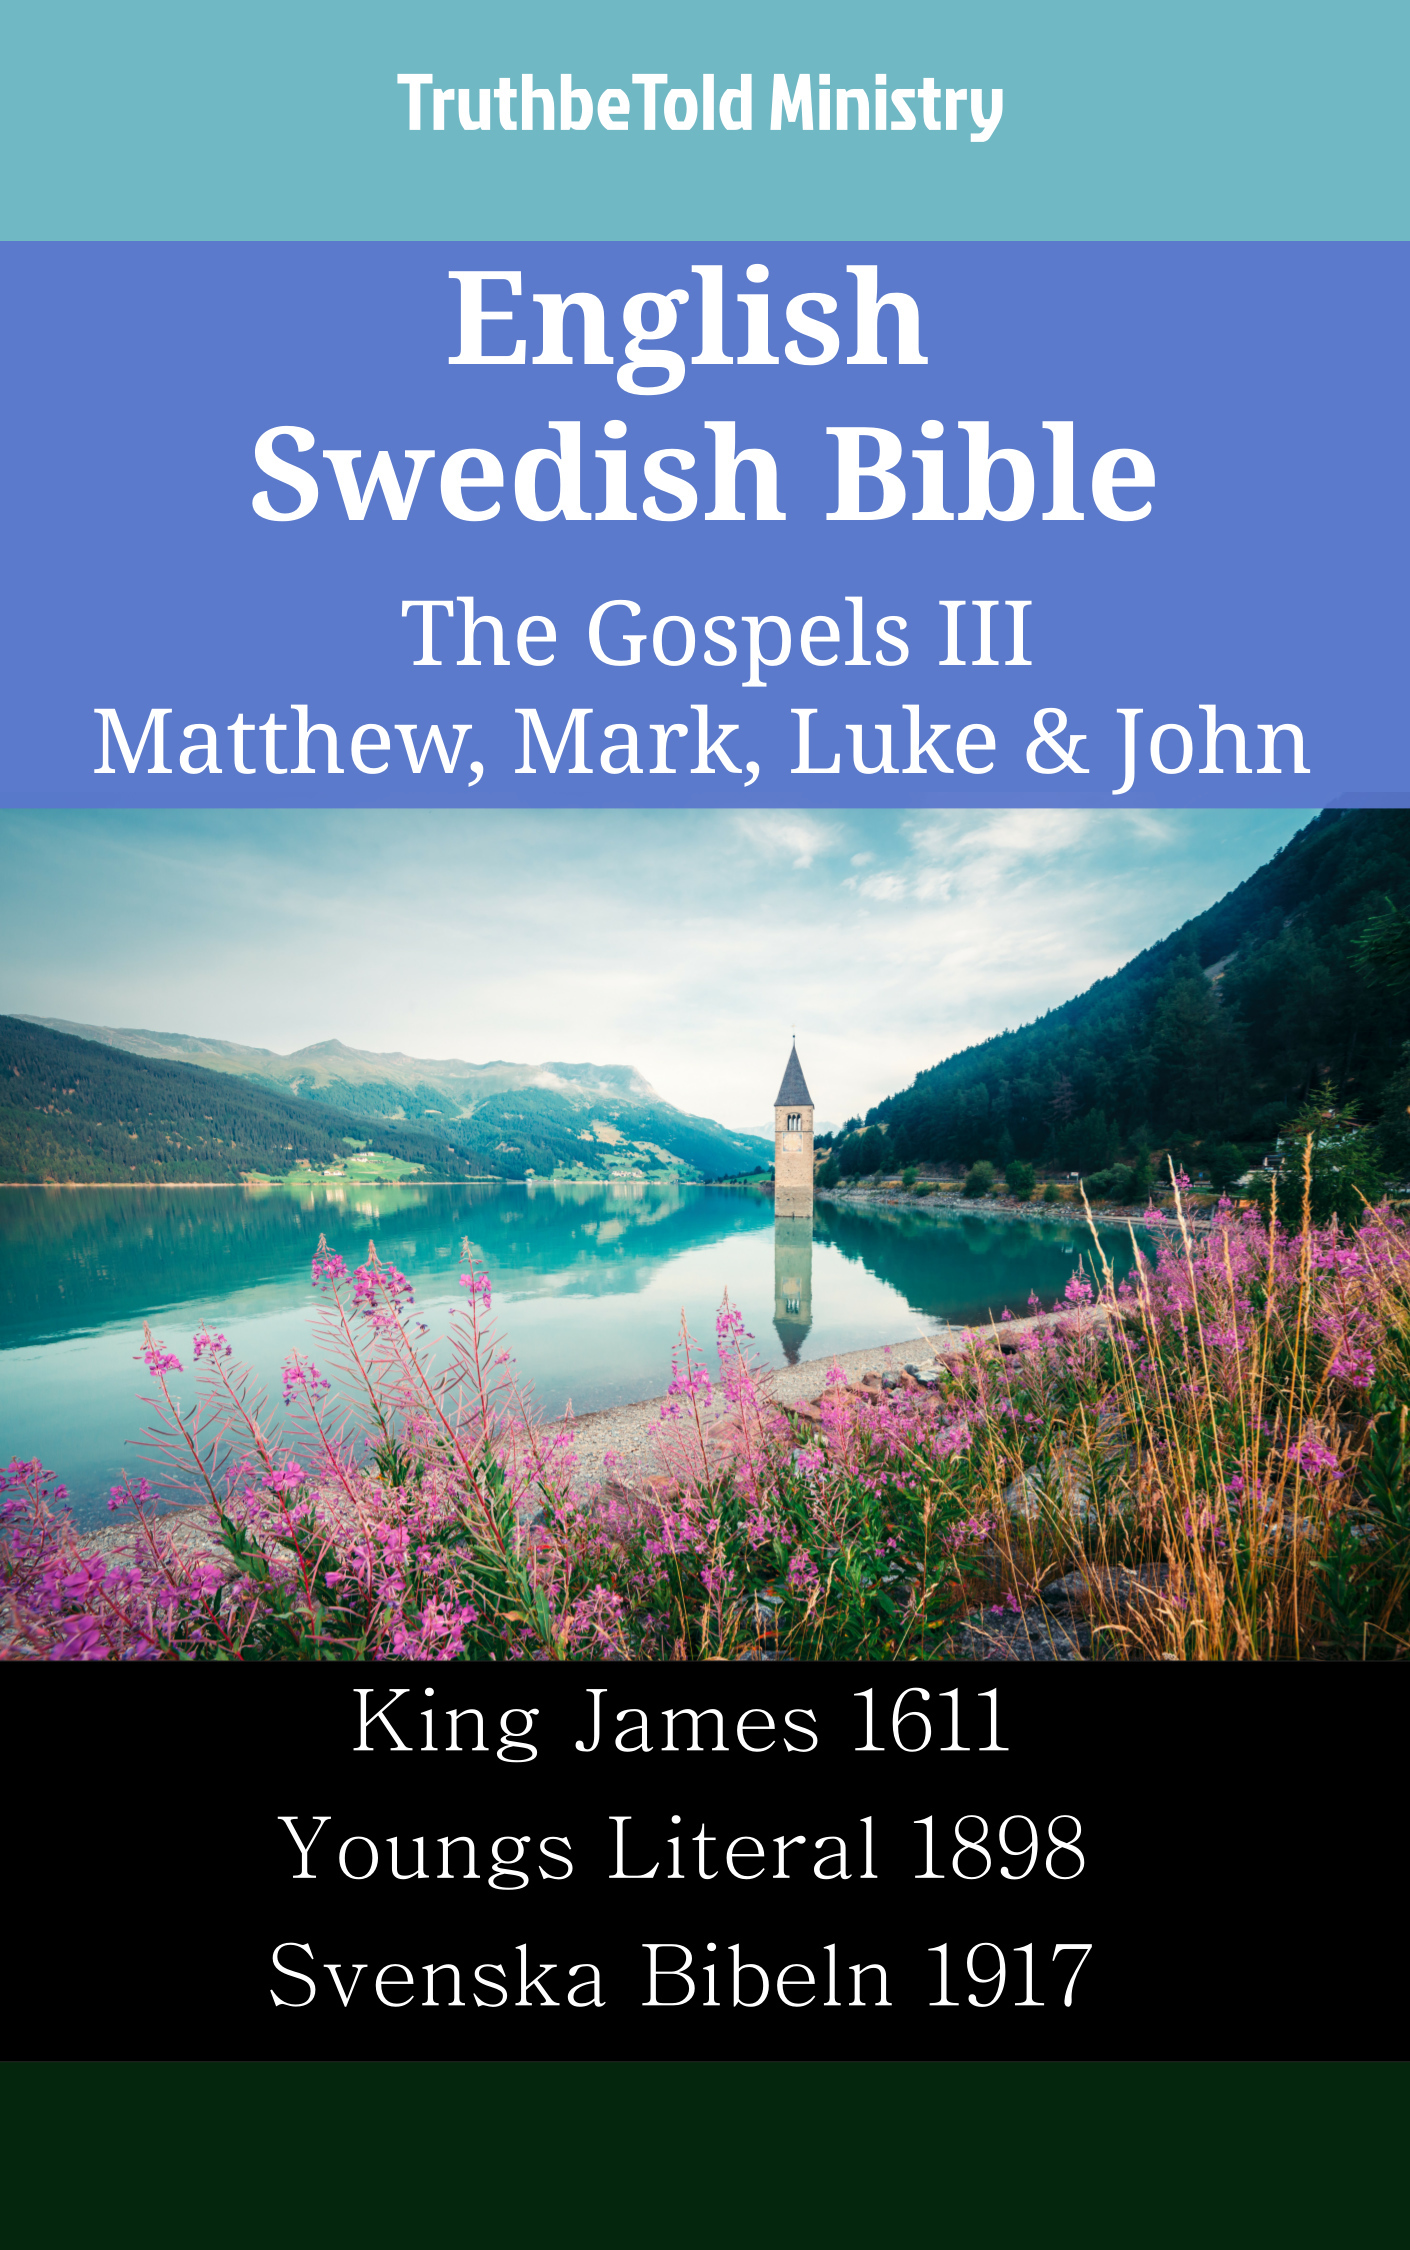 English Swedish Bible - The Gospels III - Matthew, Mark, Luke & John